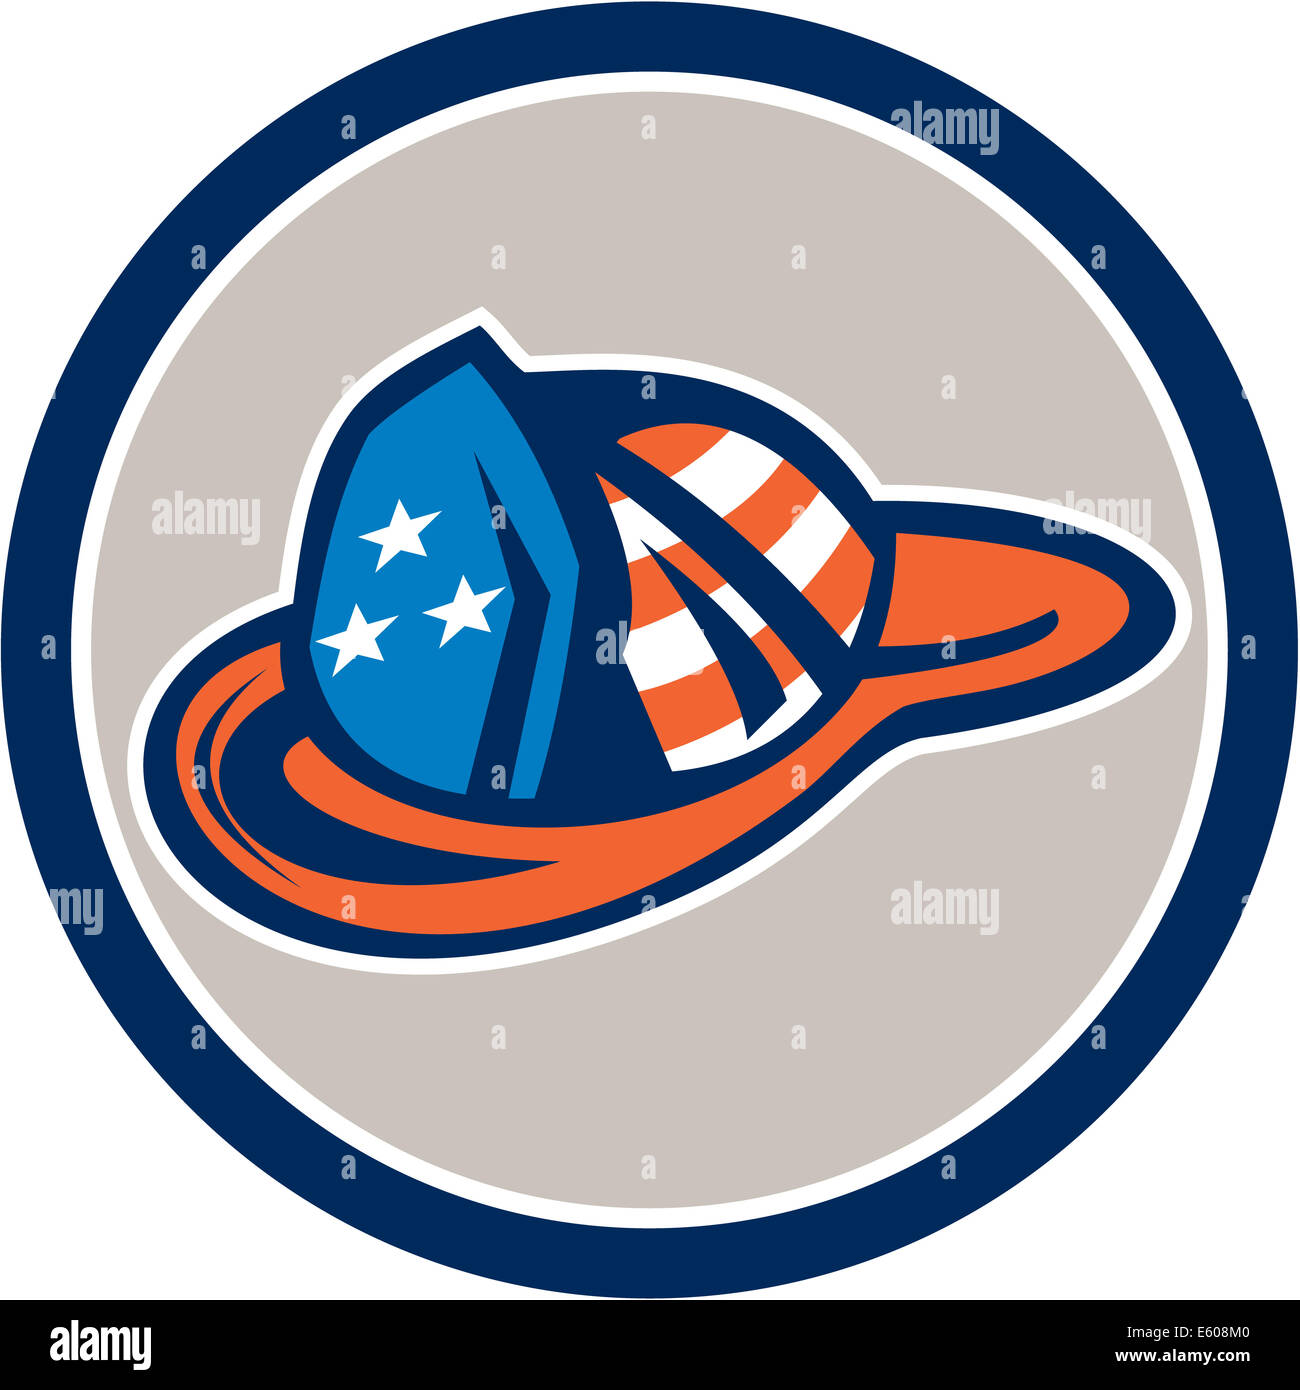 Beispiel für einen Feuerwehrmann Hut Helm mit Usa Sterne und Streifen design-Set im inneren Kreis auf isolierten weißen Hintergrund getan im retro-Stil. Stockfoto